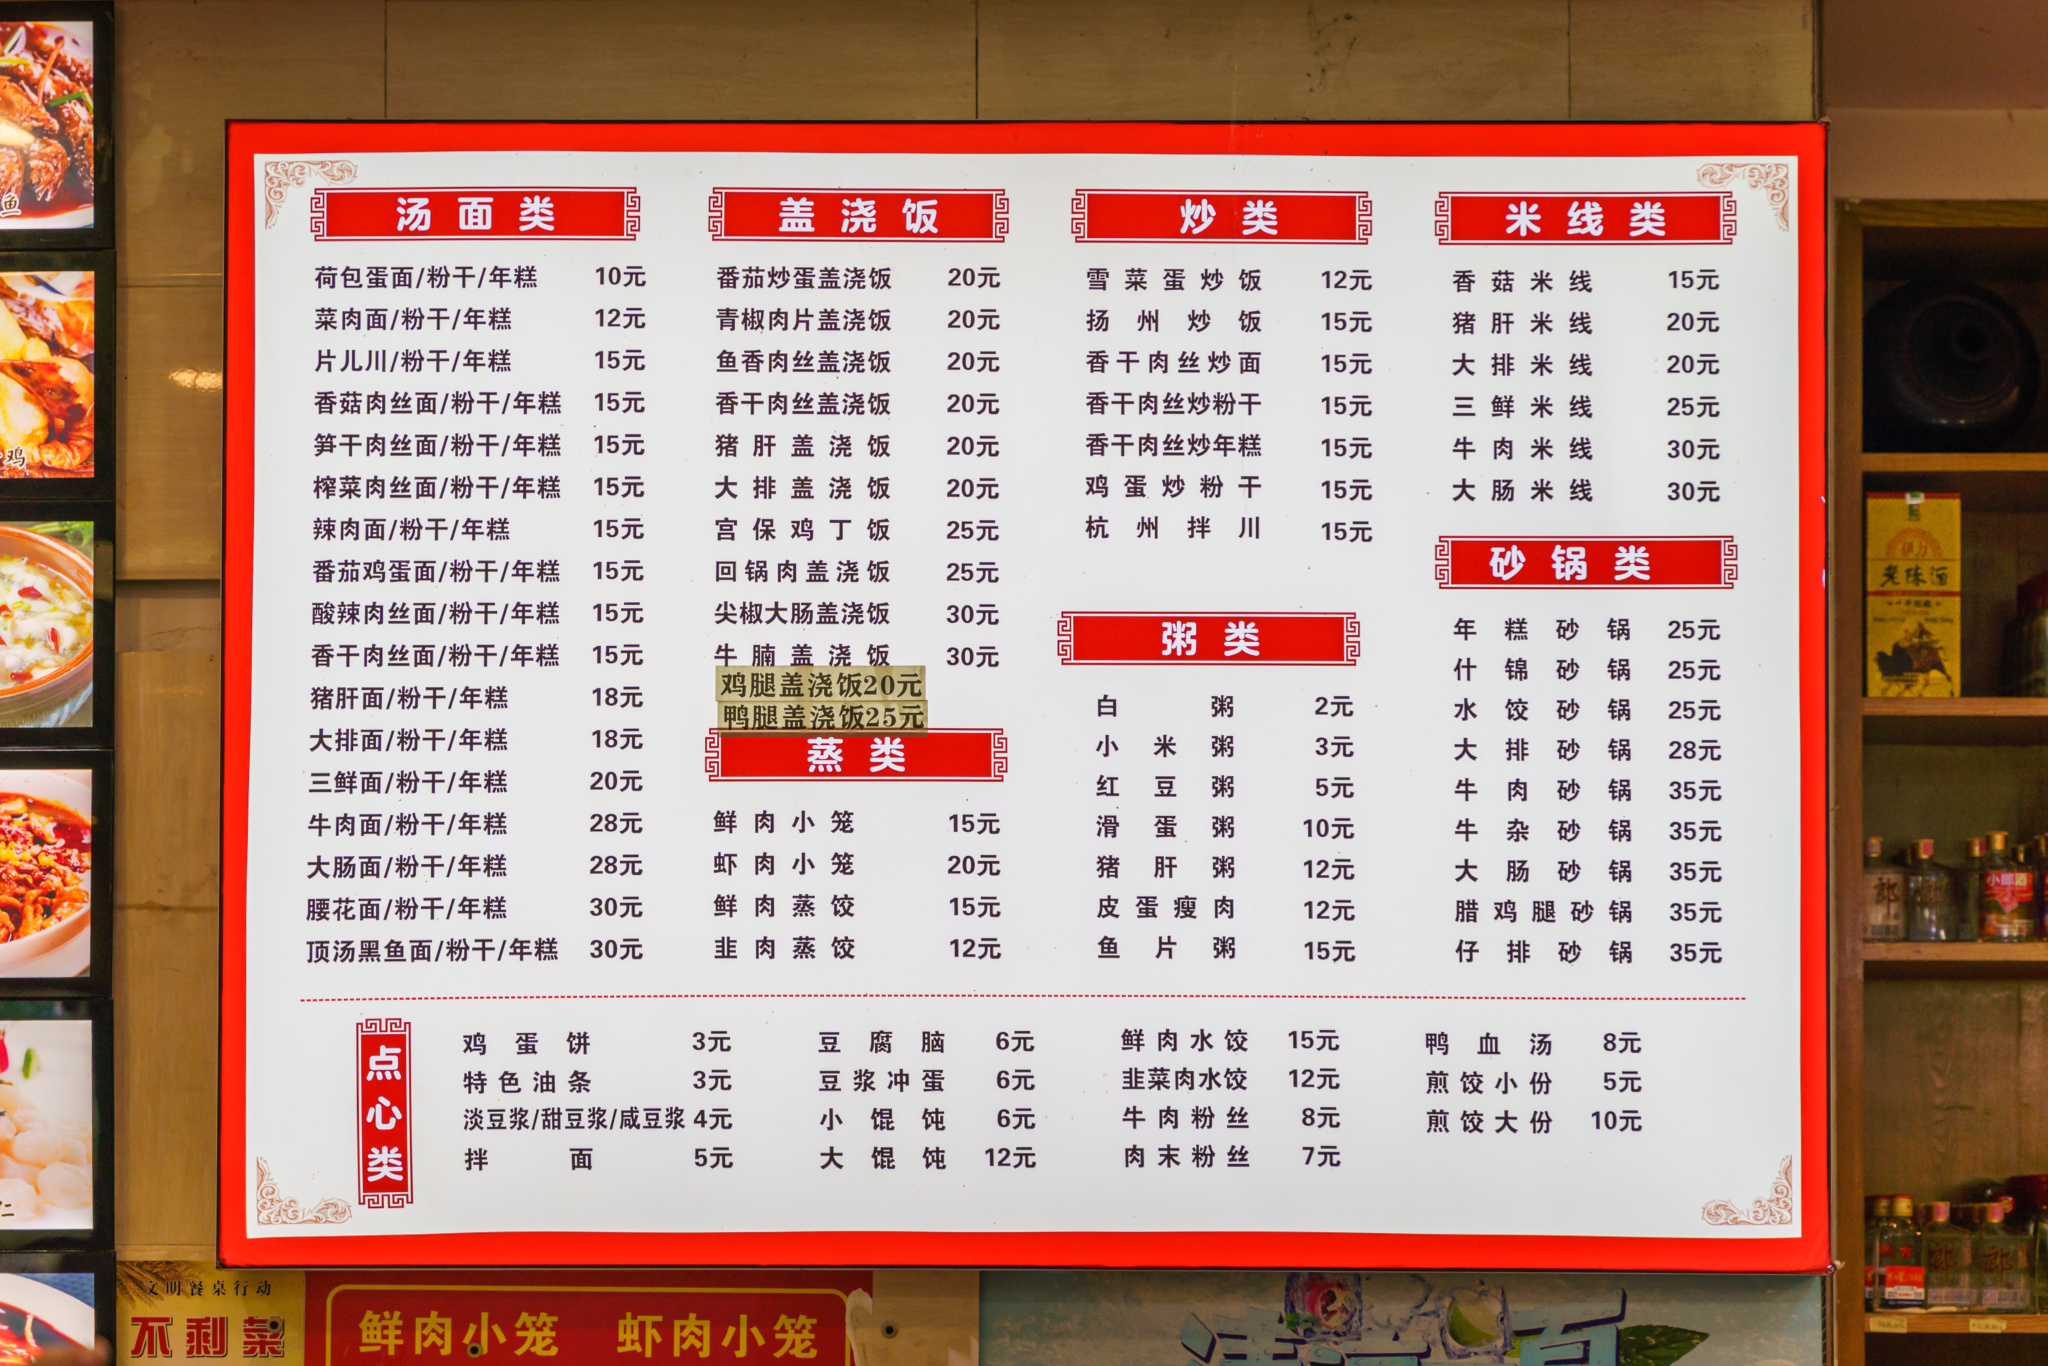 中午晚餐的菜单就是浙江,杭州菜系的餐点,在台北类似的有 九如商号